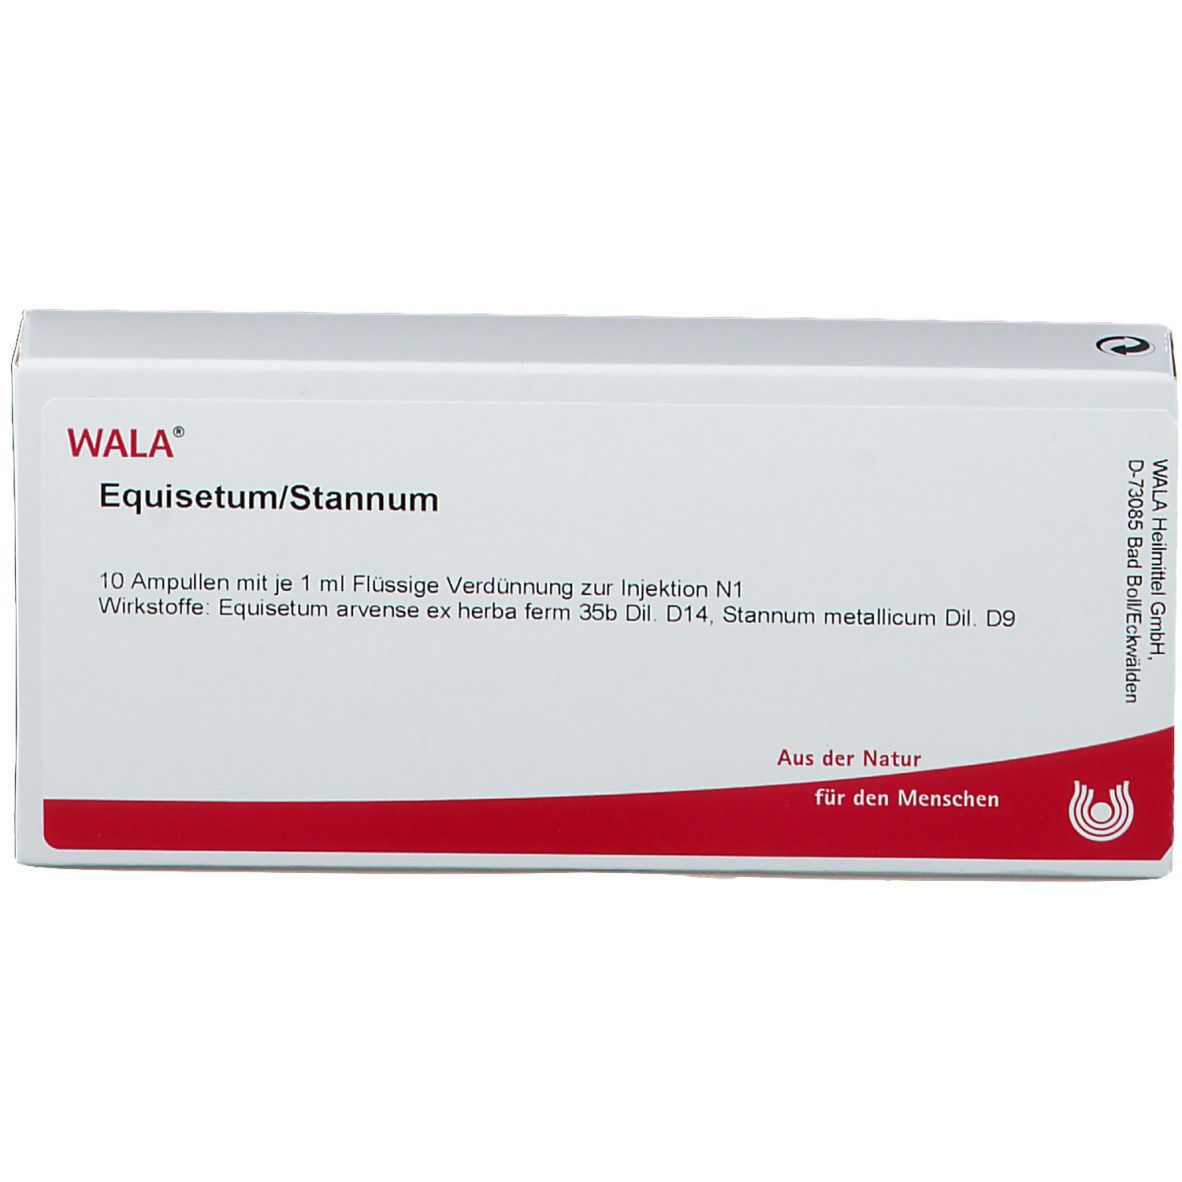 WALA® EQUISETUM/STANNUM Ampullen